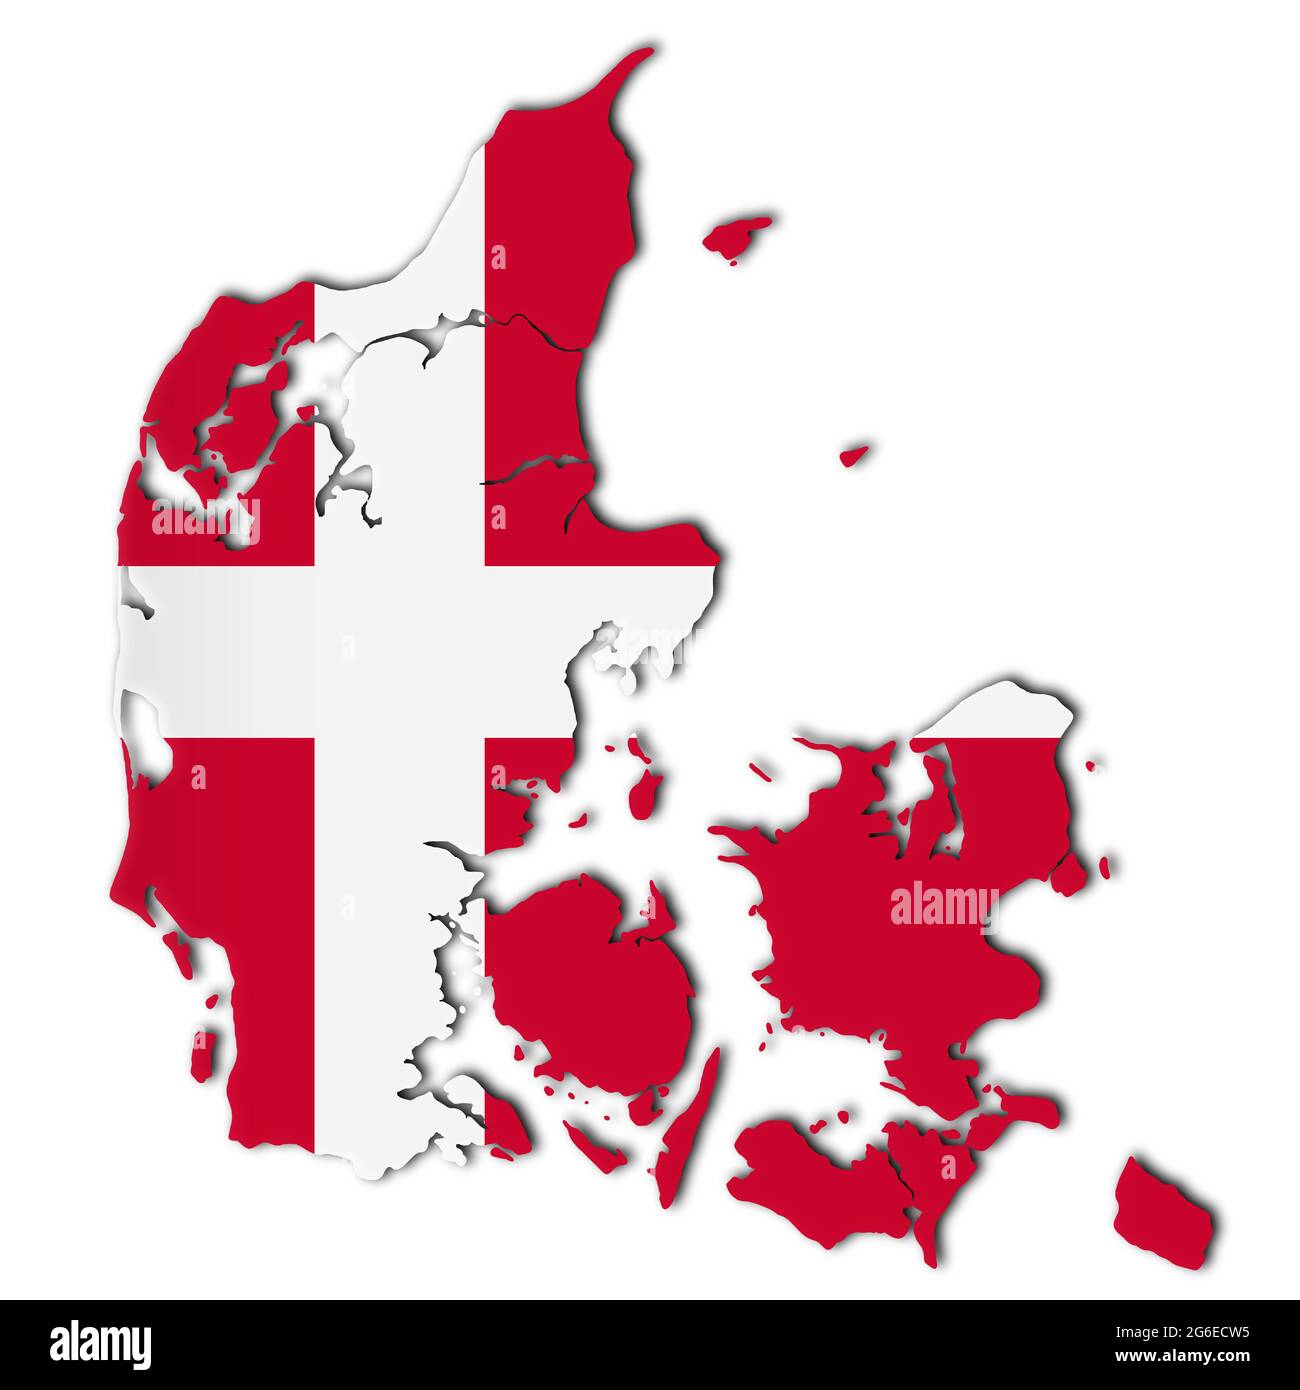 Danimarca mappa su sfondo bianco illustrazione 3d con tracciato di ritaglio Foto Stock